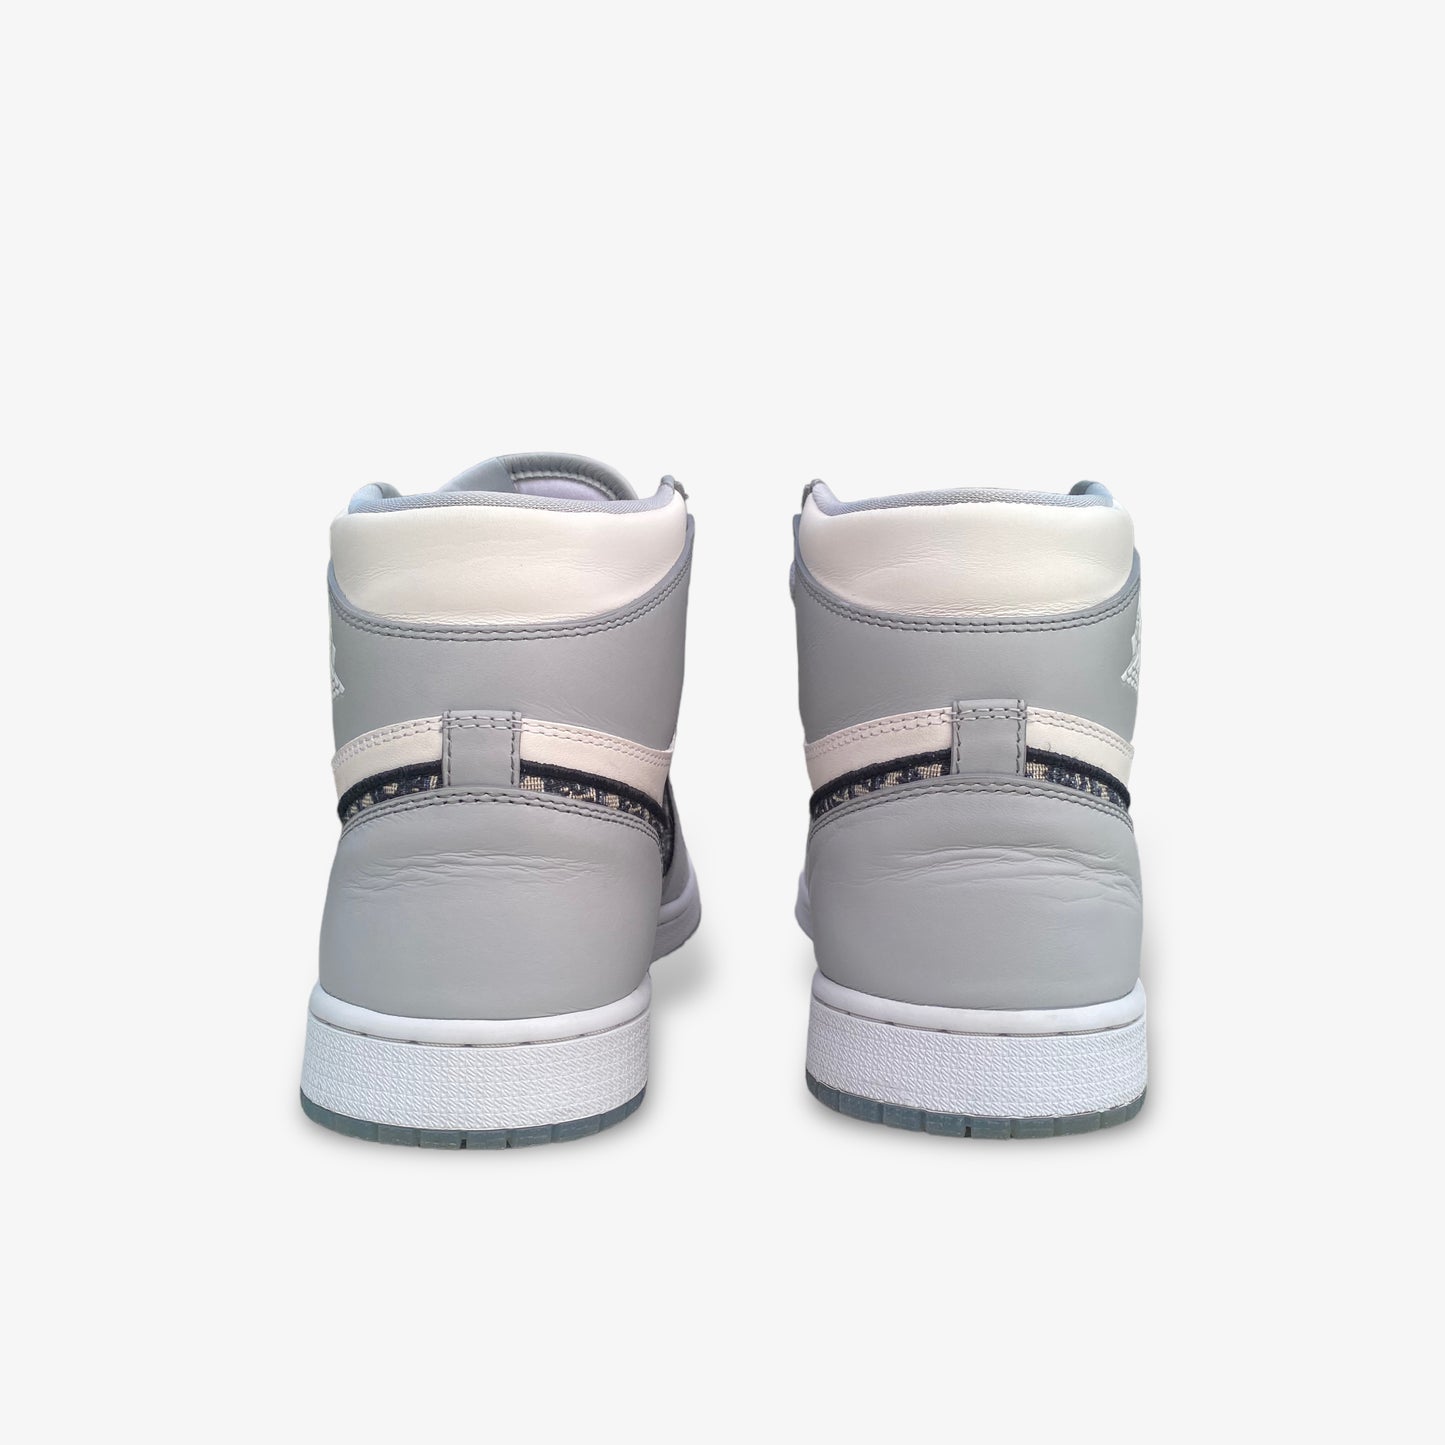 Air Jordan 1 High “DIOR” (2020)